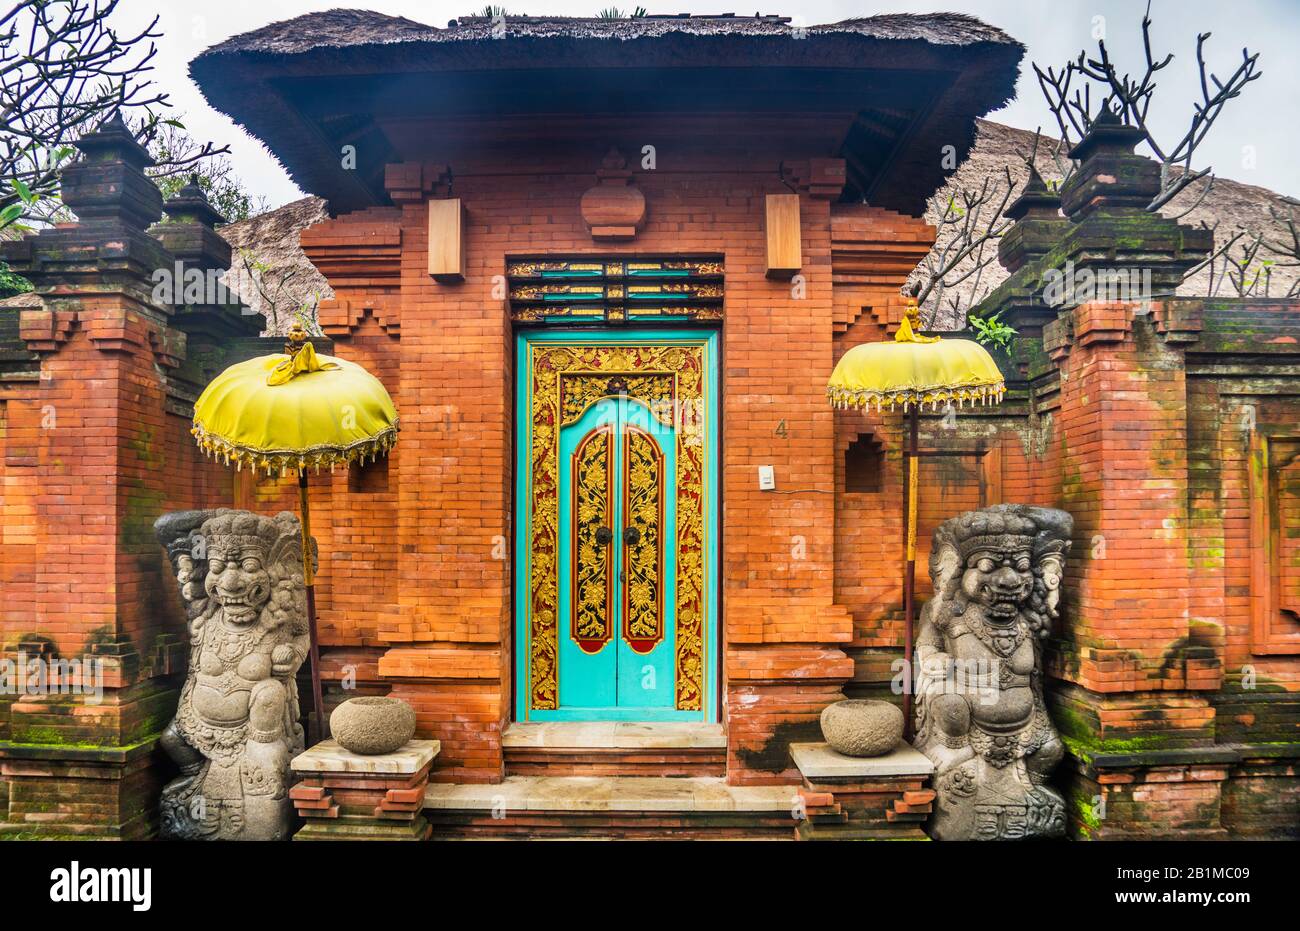 Indonesia, Bali, Sanur, entrada tradicional al recinto amurallado de una residencia balinesa, flanqueada por dos esculturas dvarapalas guardianes Foto de stock